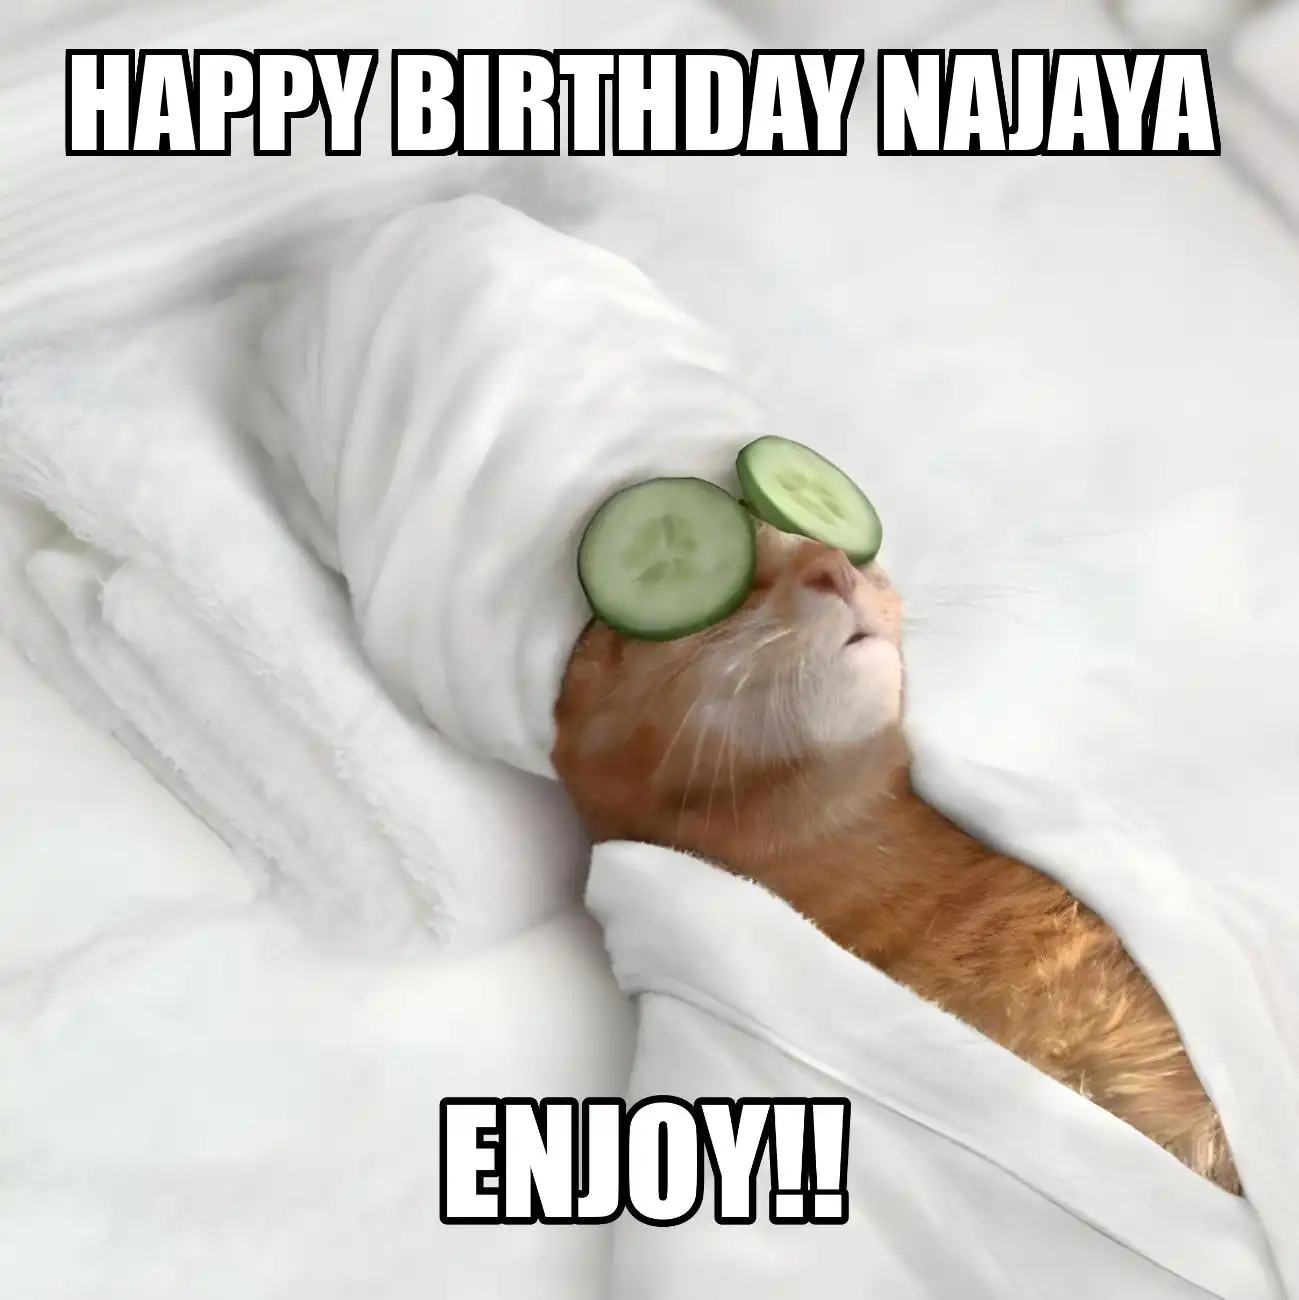 Happy Birthday Najaya Enjoy Cat Meme